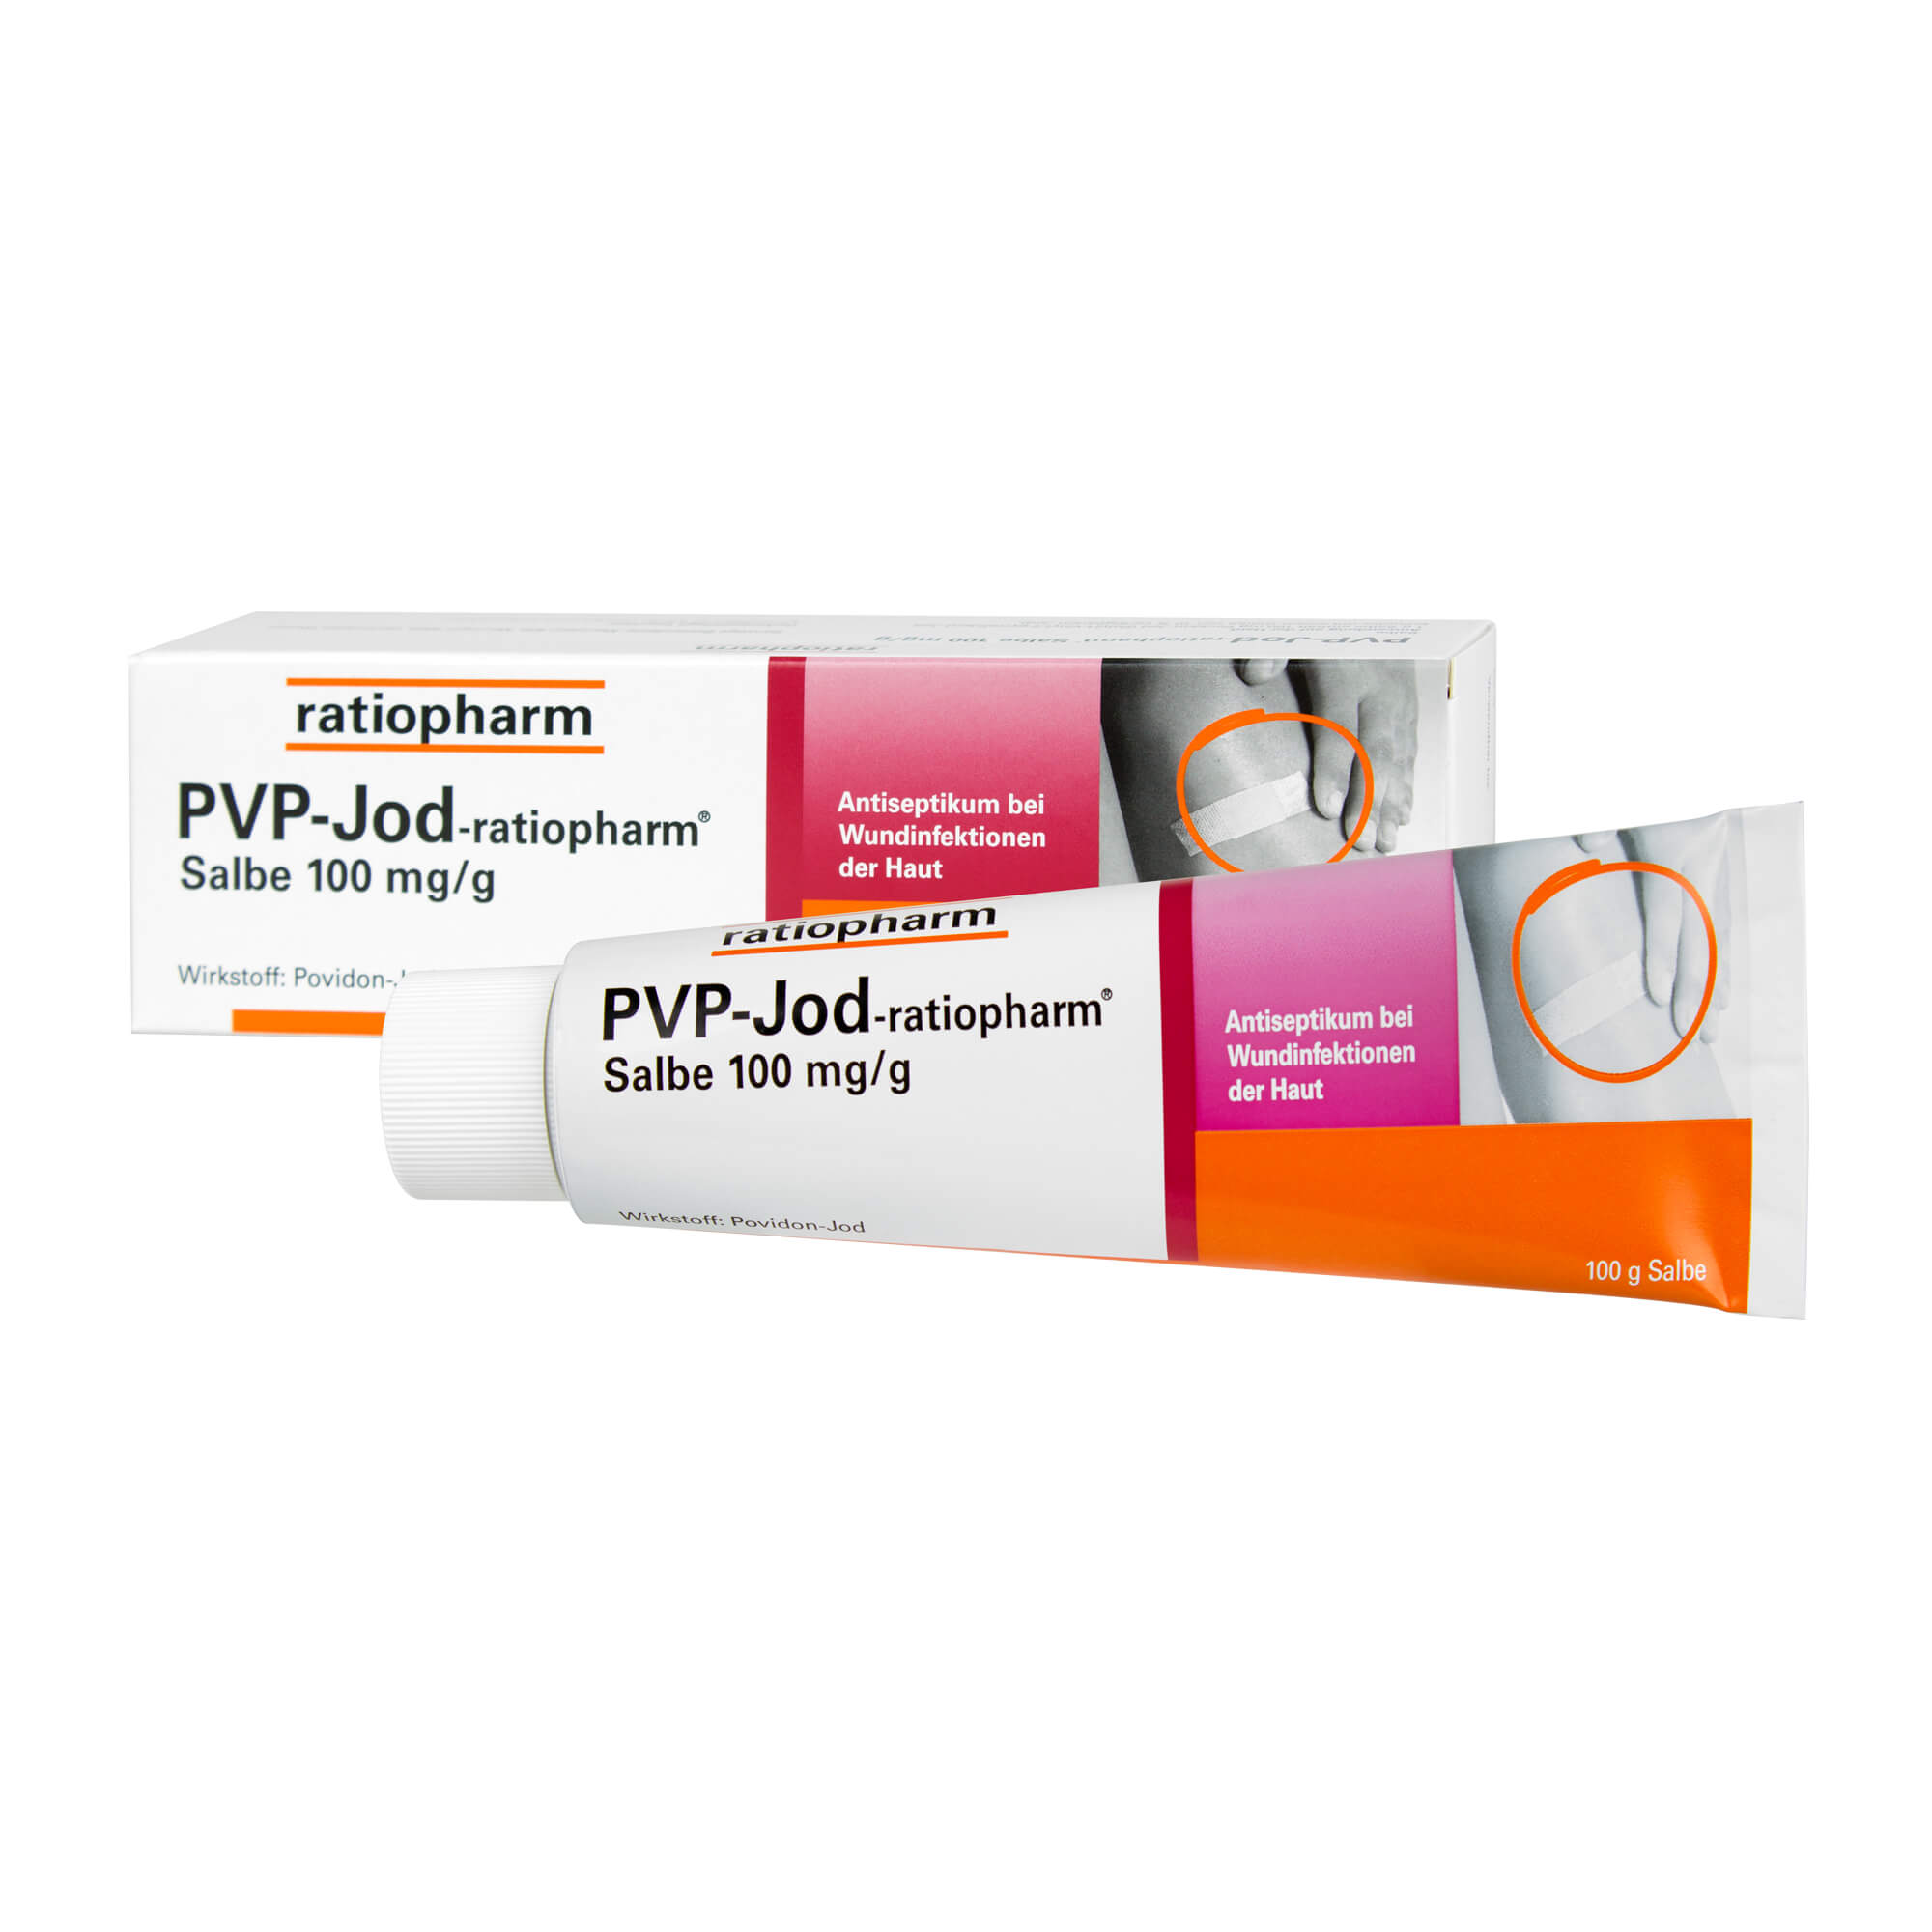 PVP-Jod-ratiopharm Salbe Antiseptikum